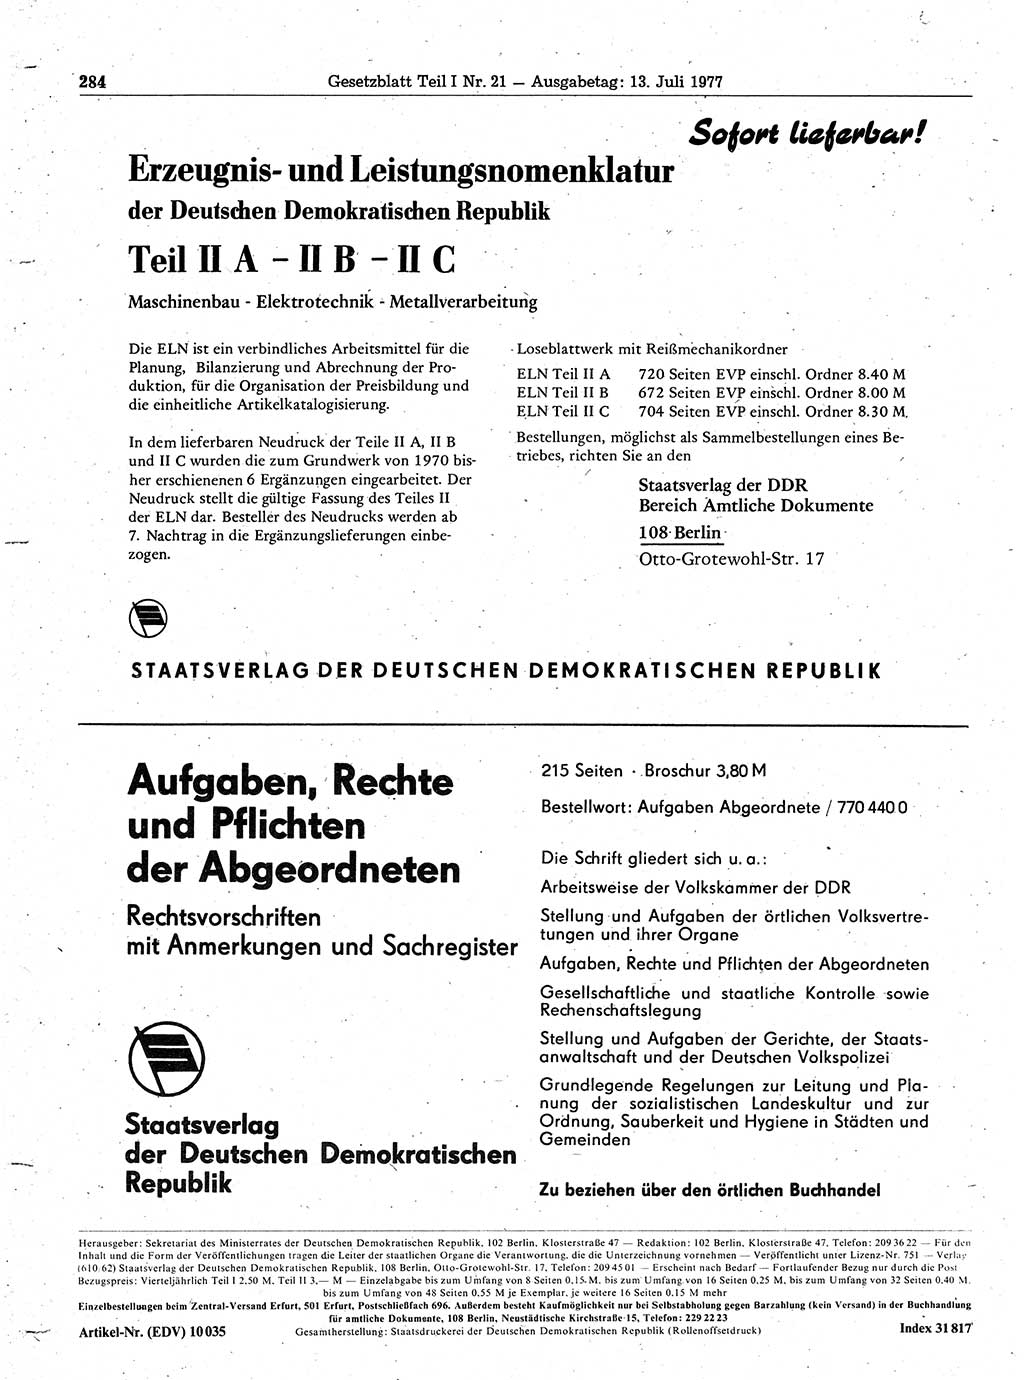 Gesetzblatt (GBl.) der Deutschen Demokratischen Republik (DDR) Teil Ⅰ 1977, Seite 284 (GBl. DDR Ⅰ 1977, S. 284)